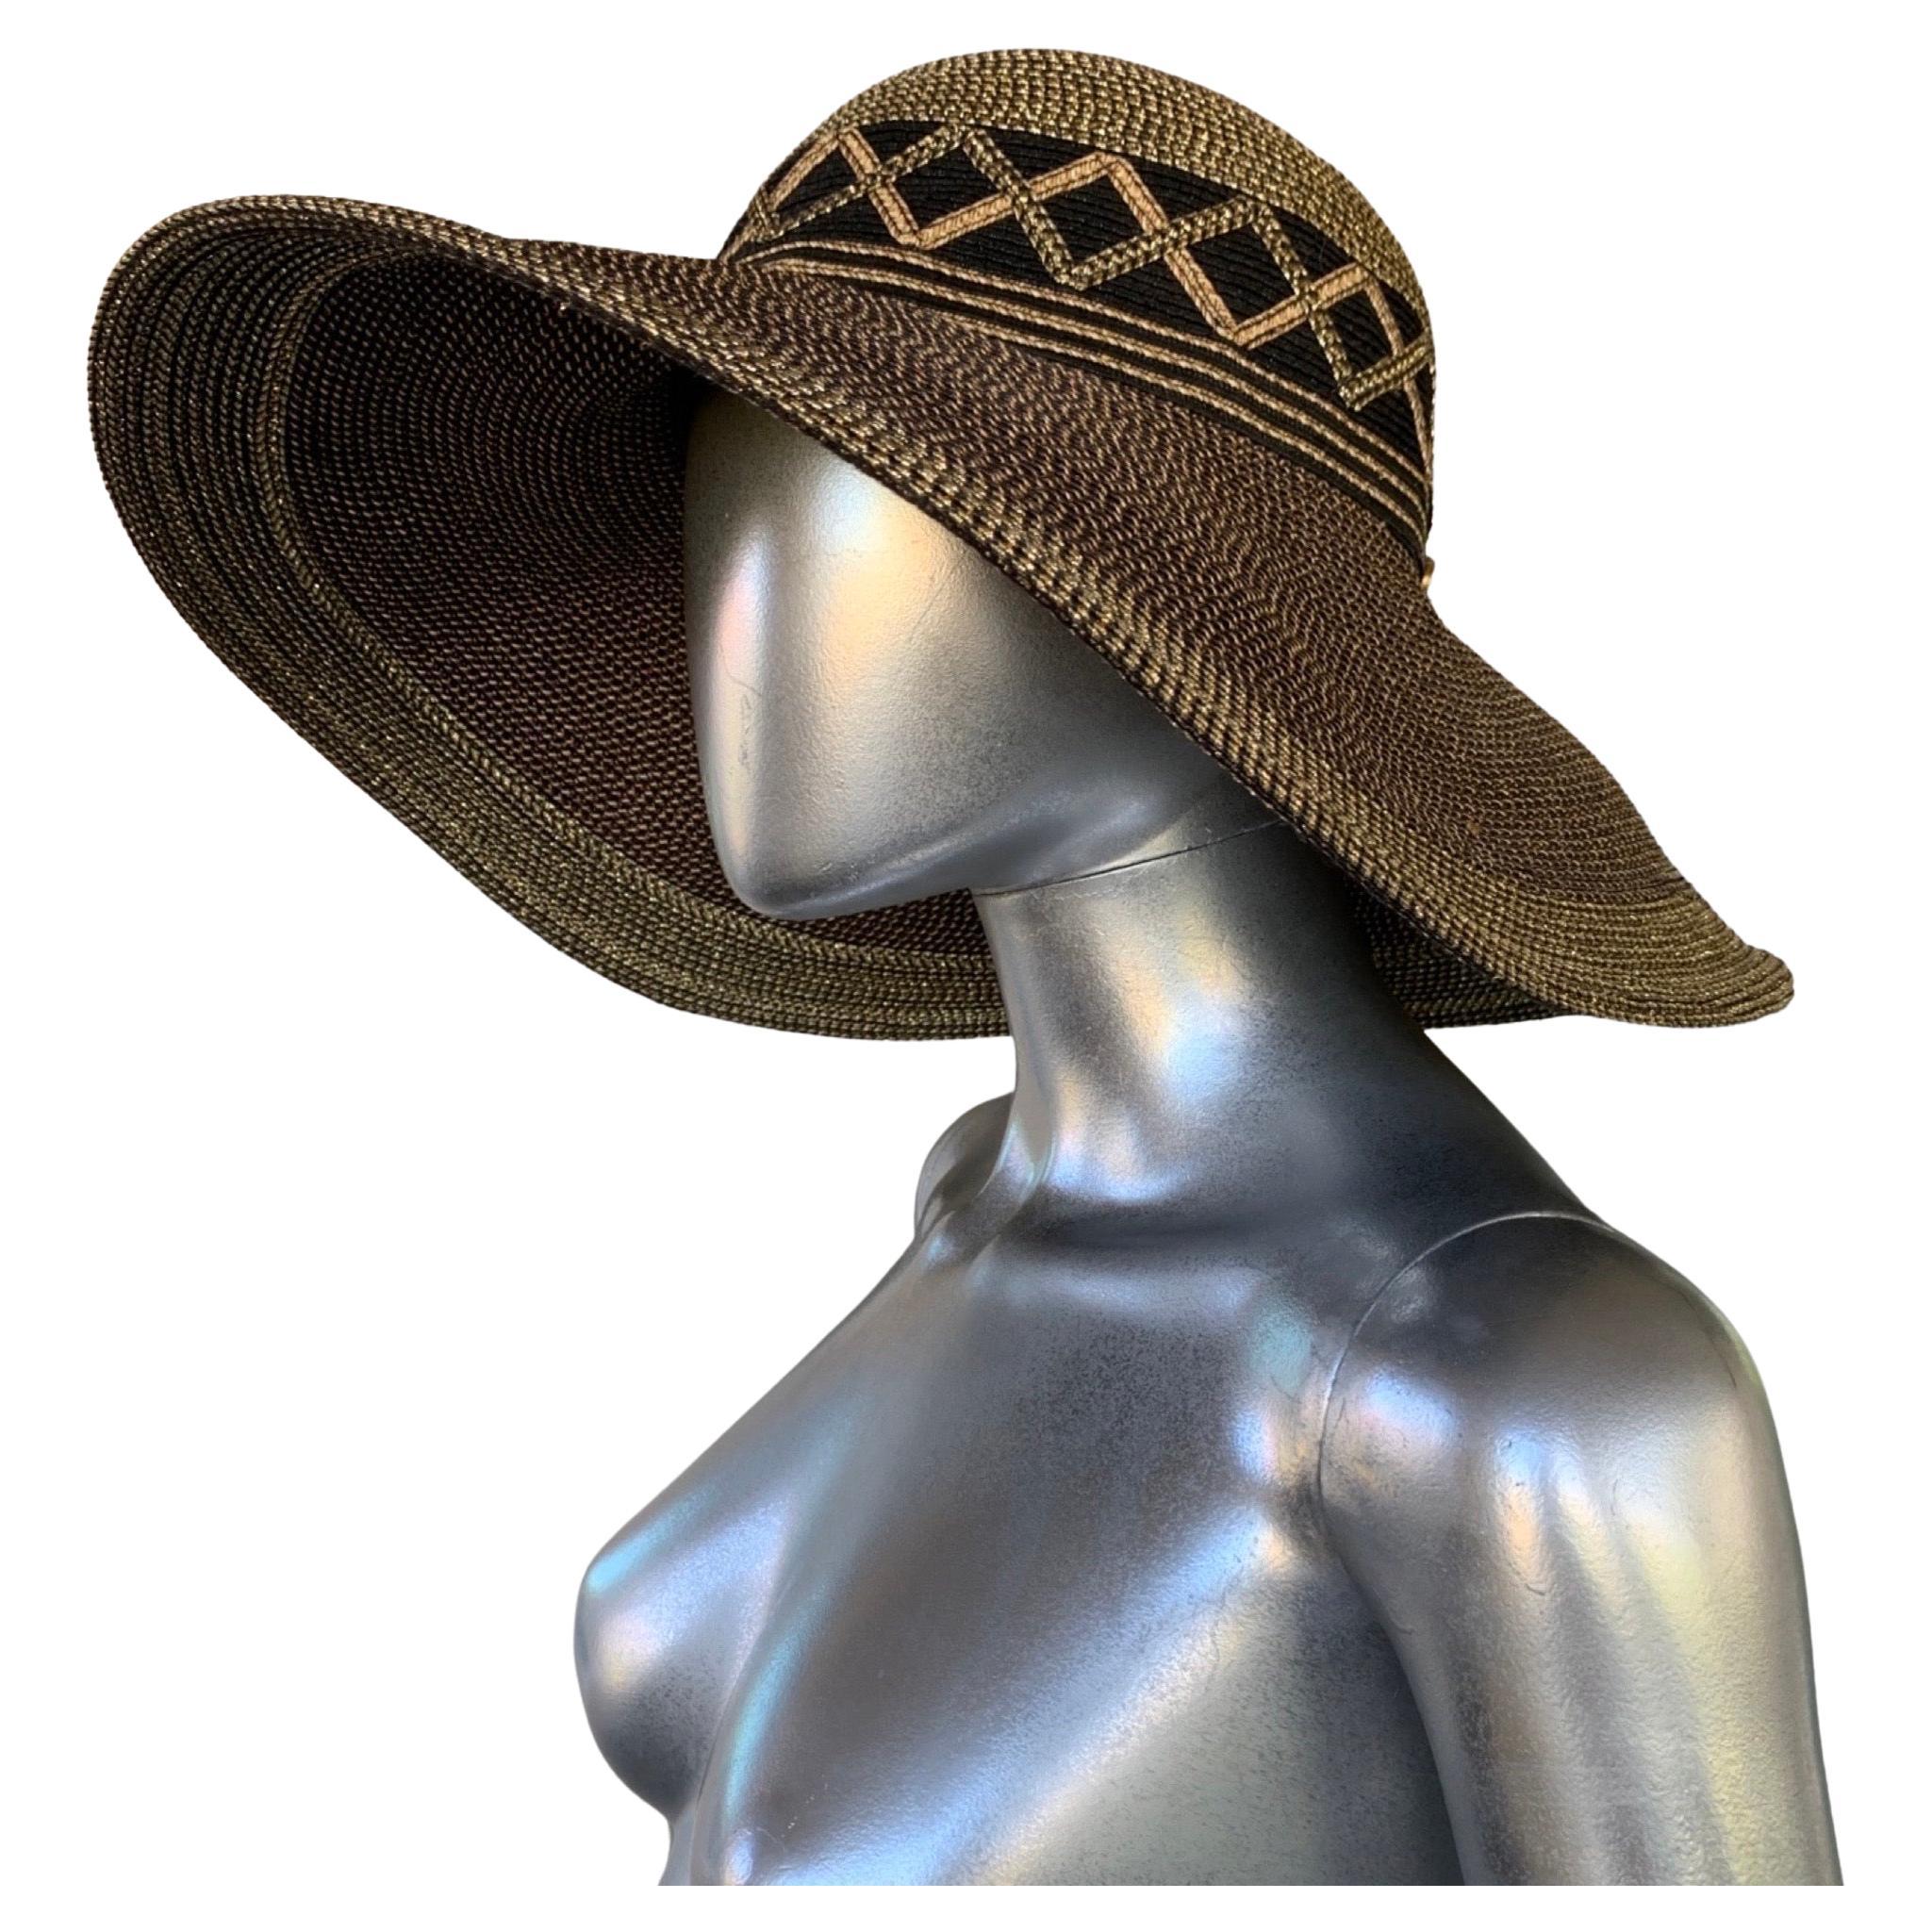 Black Sun Hat - 194 For Sale on 1stDibs